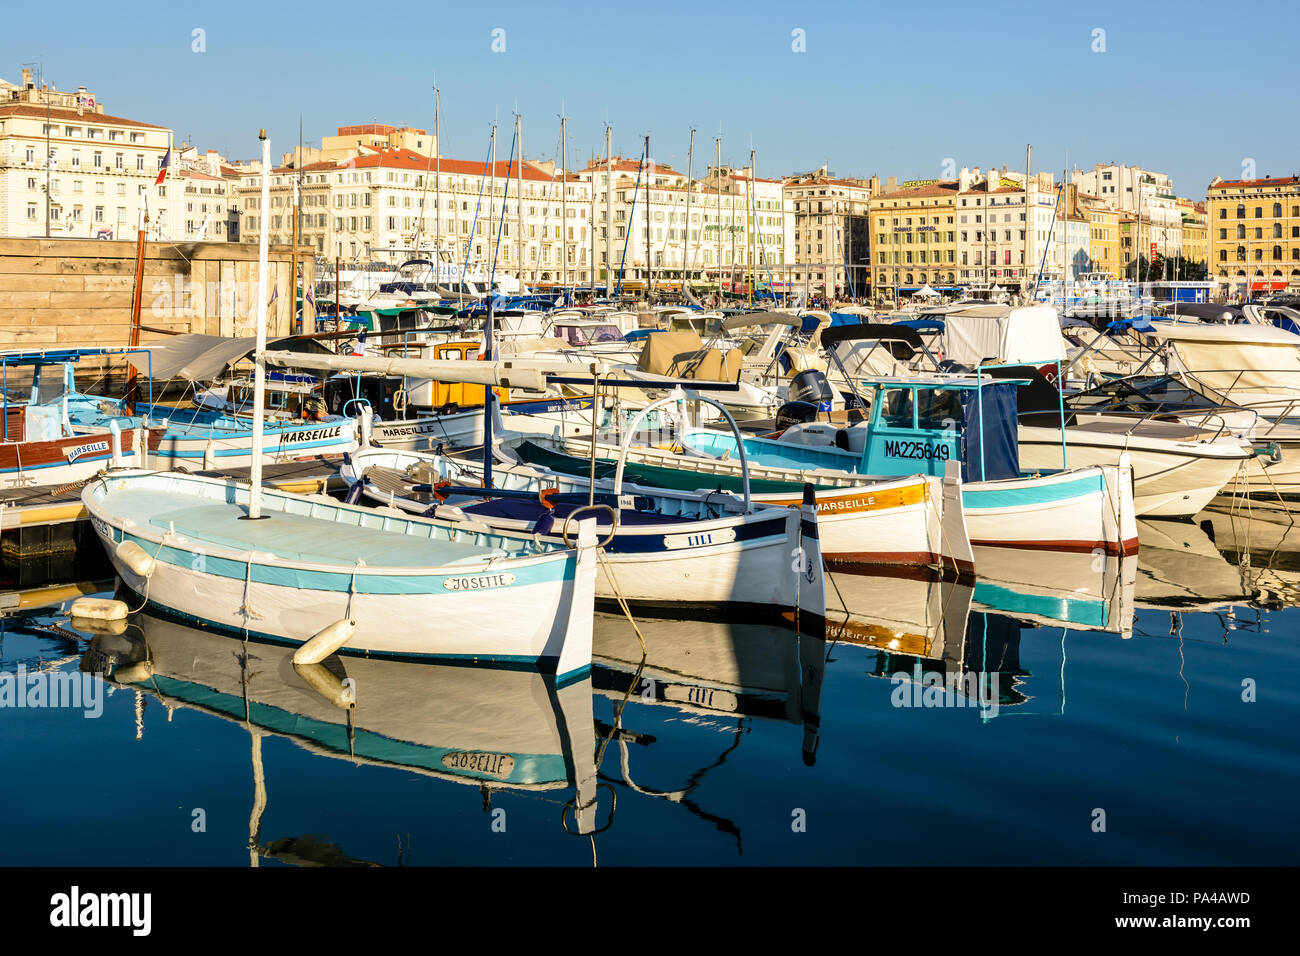 Le Vieux Port de Marseille, France, avec de vieux bateaux de pêche amarrés dans l'eau morte et les bâtiments du Quai des Belges baigné de lumière chaude. Banque D'Images